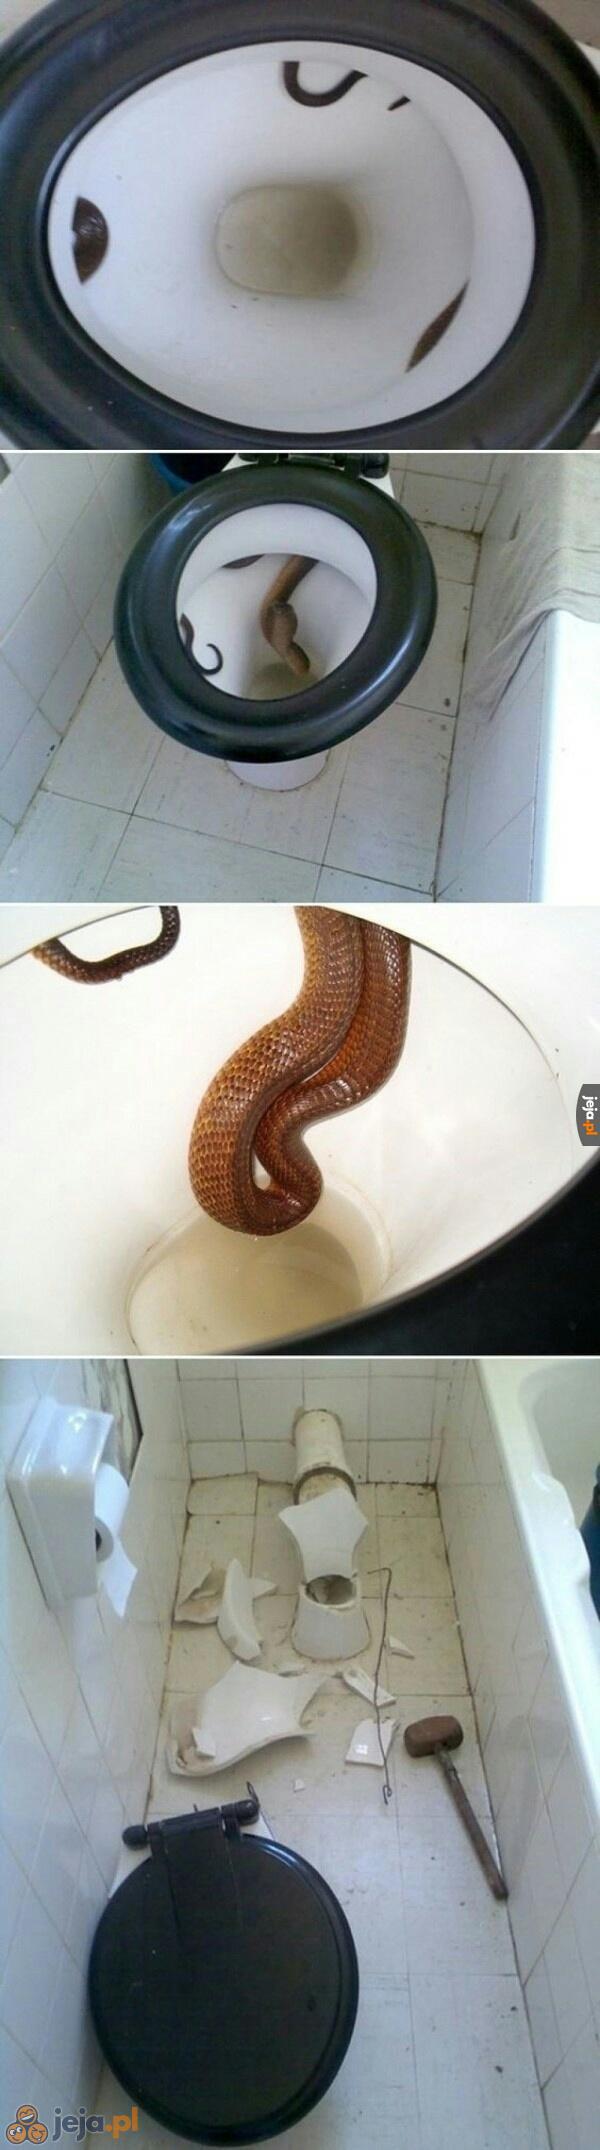 Niespodzianka w toalecie